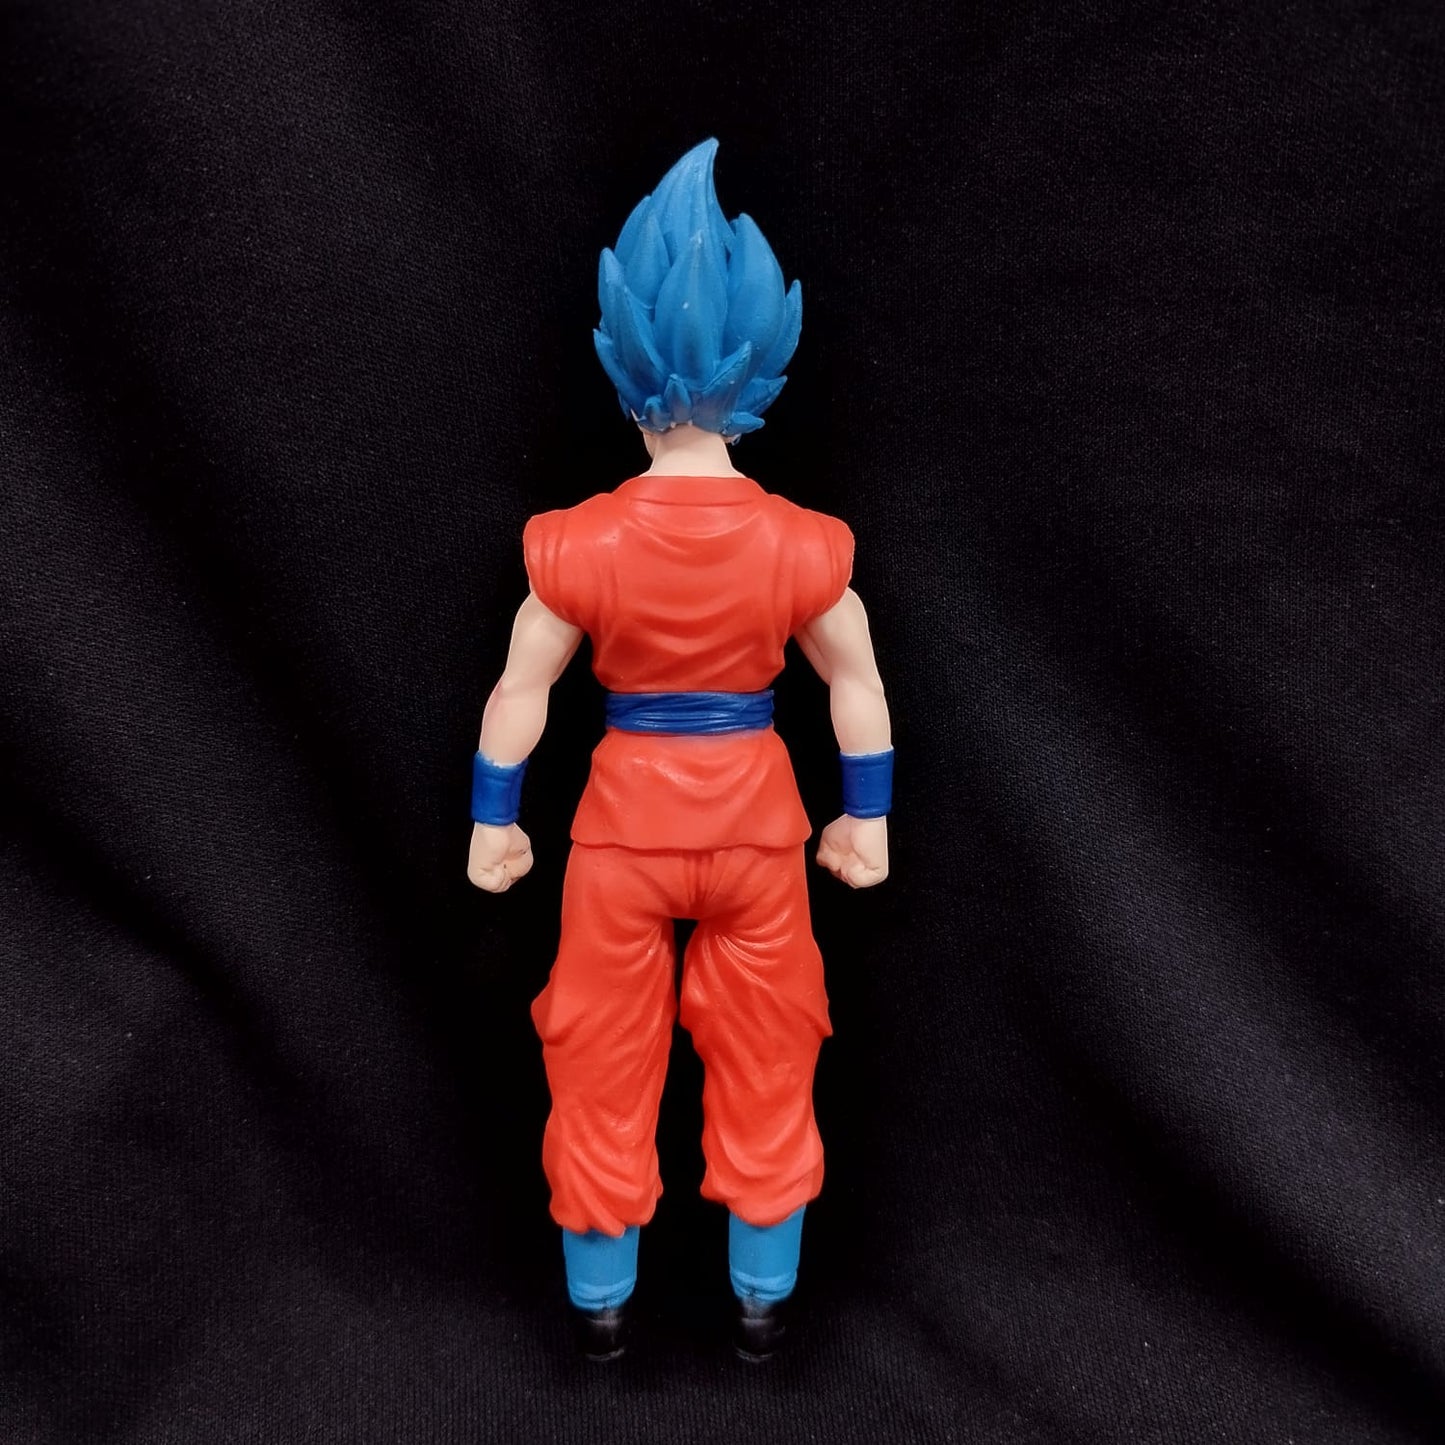 Dragon Ball Z: Goku Standing Action Figure